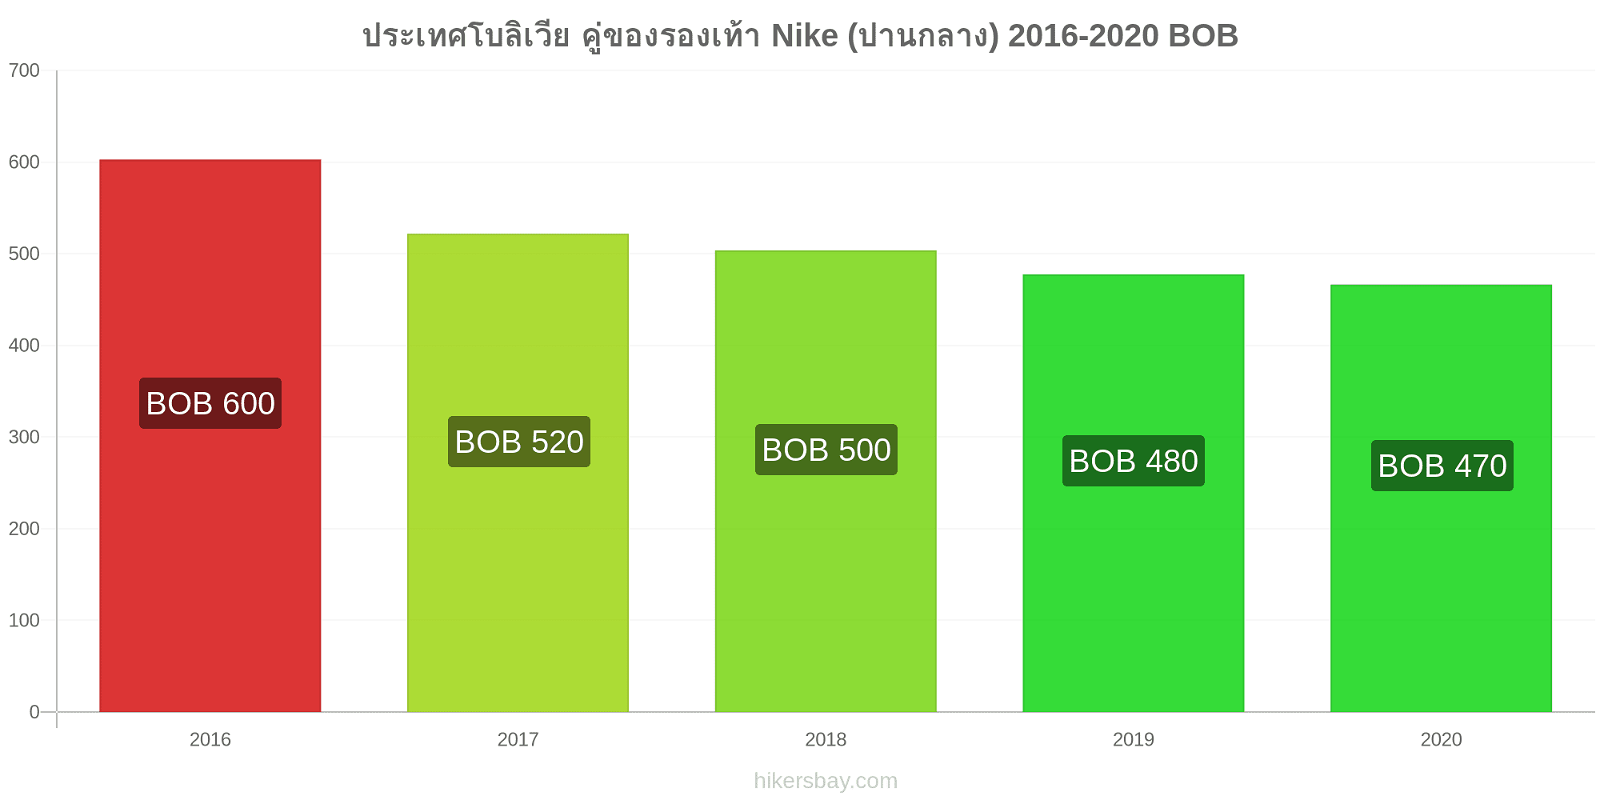 ประเทศโบลิเวีย การเปลี่ยนแปลงราคา คู่ของรองเท้า Nike (ปานกลาง) hikersbay.com